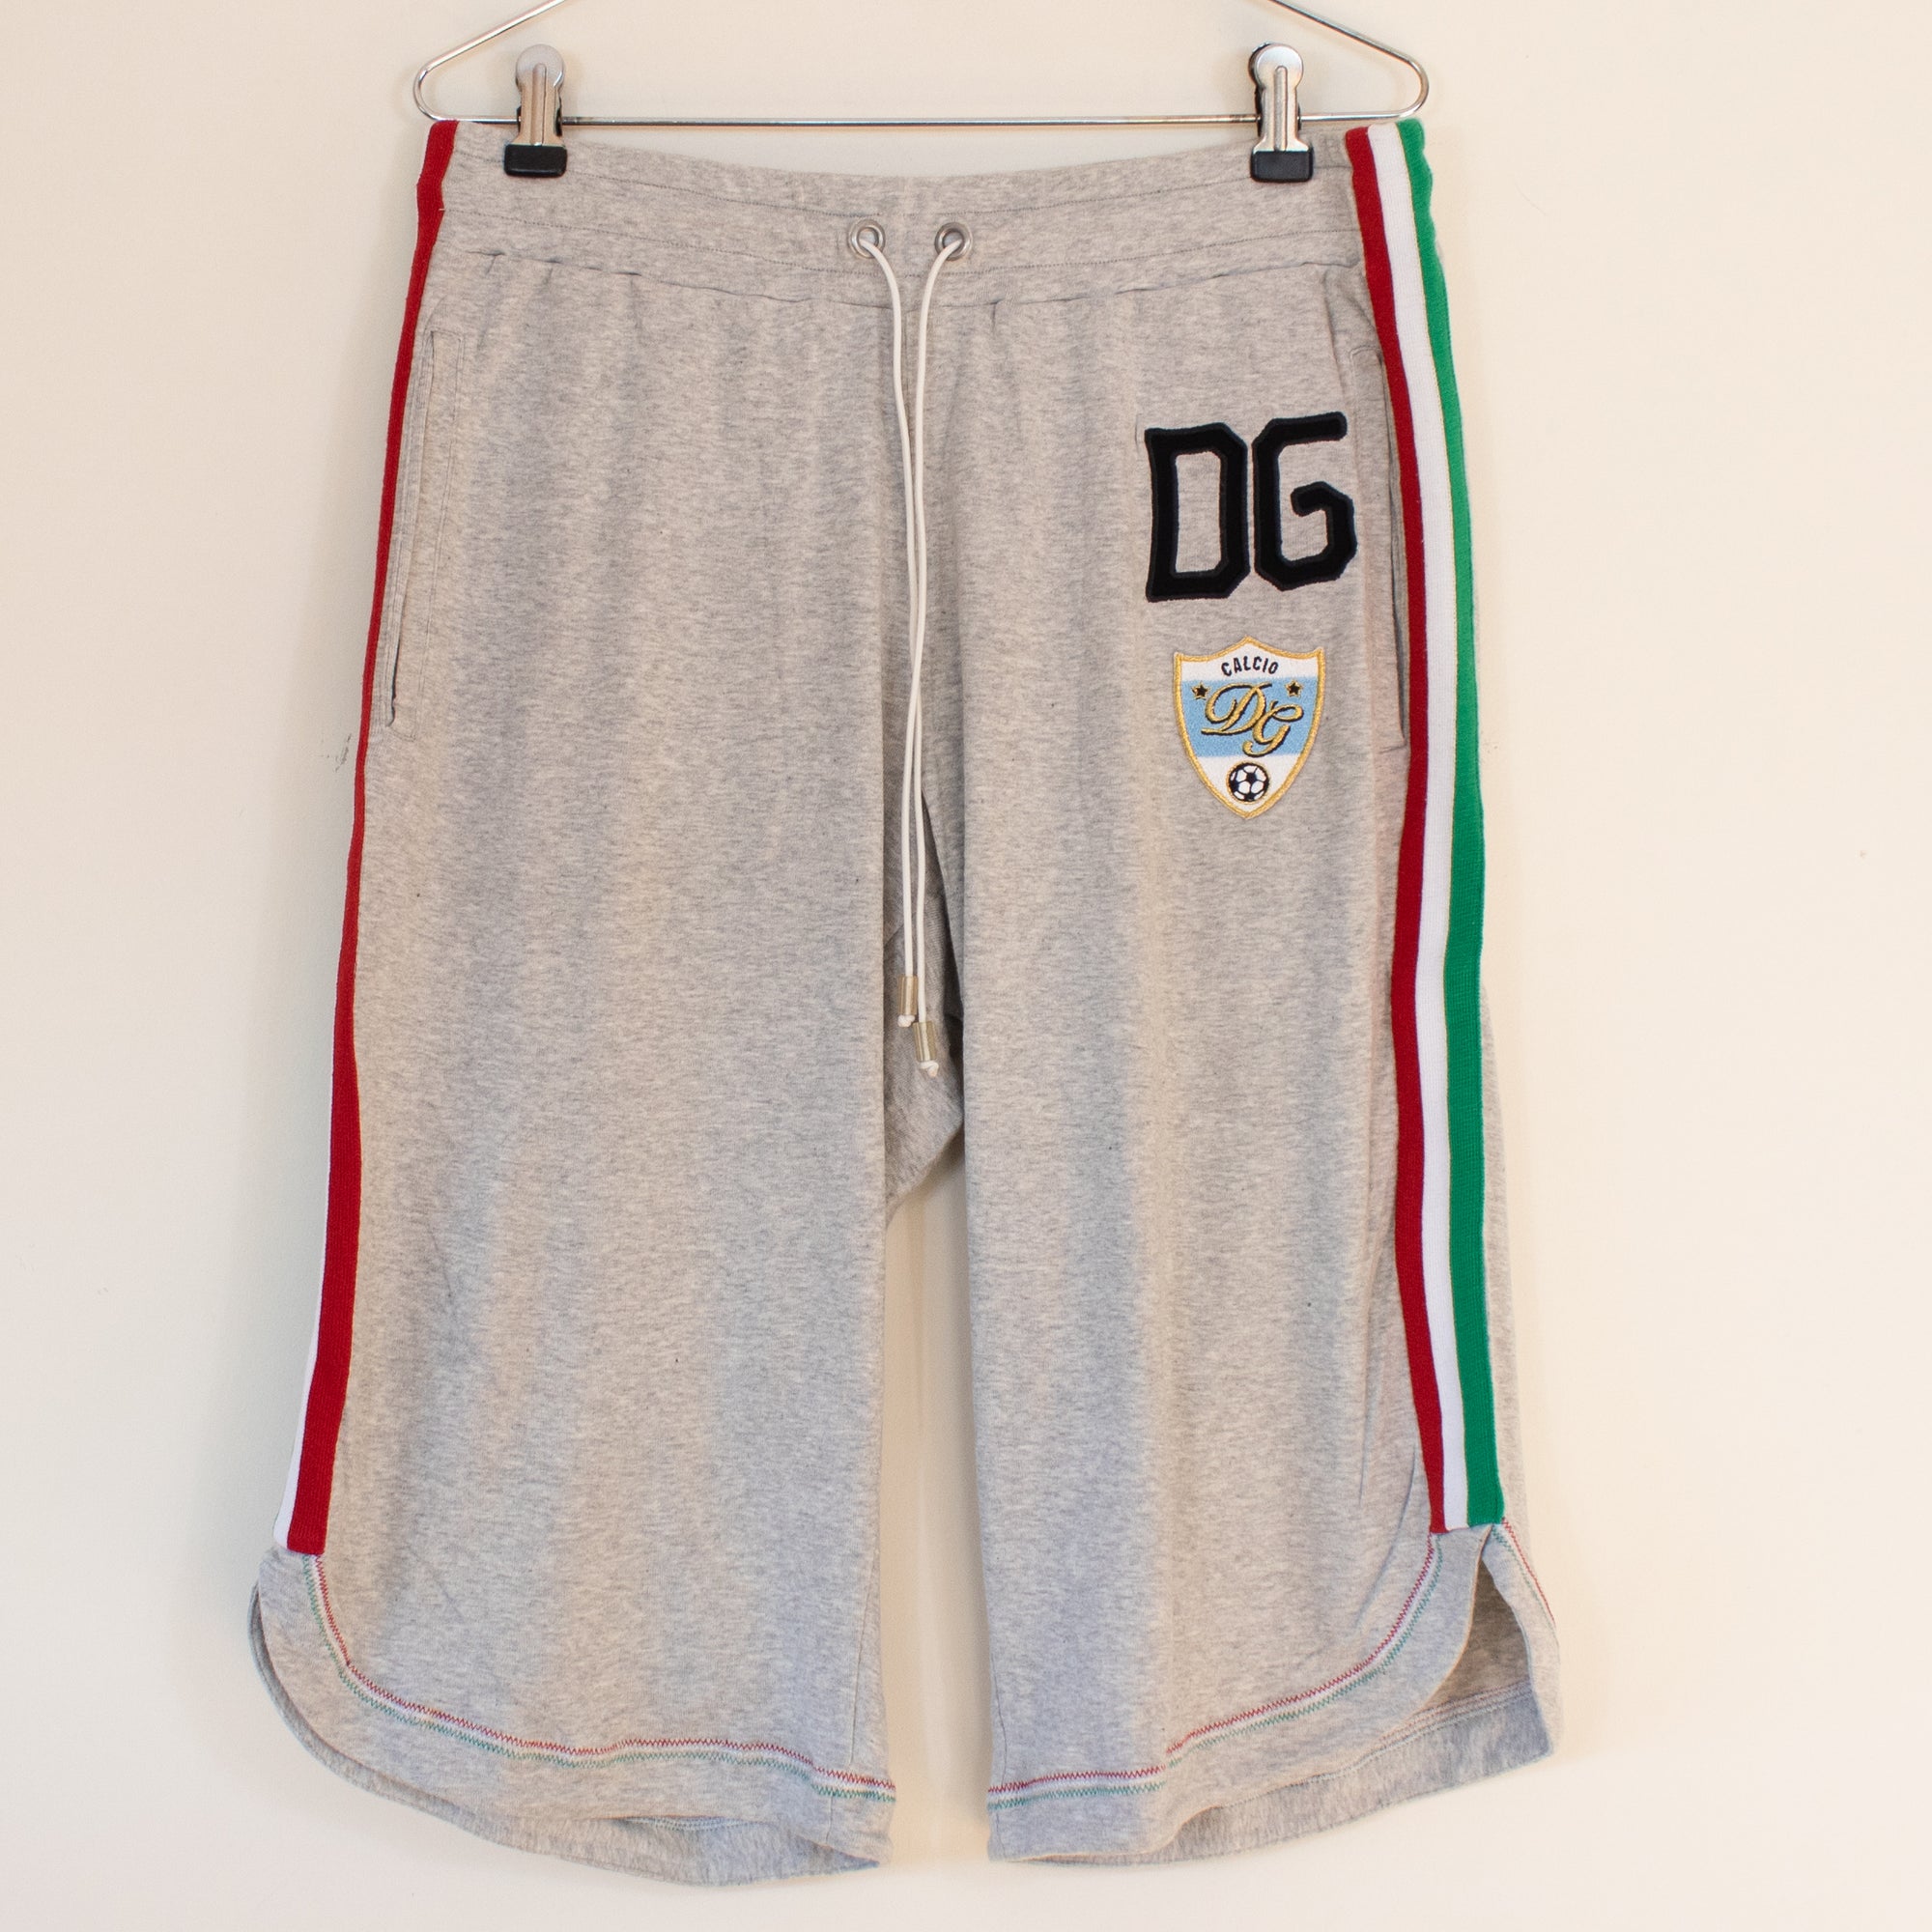 Dolce&amp;Gabbana shorts